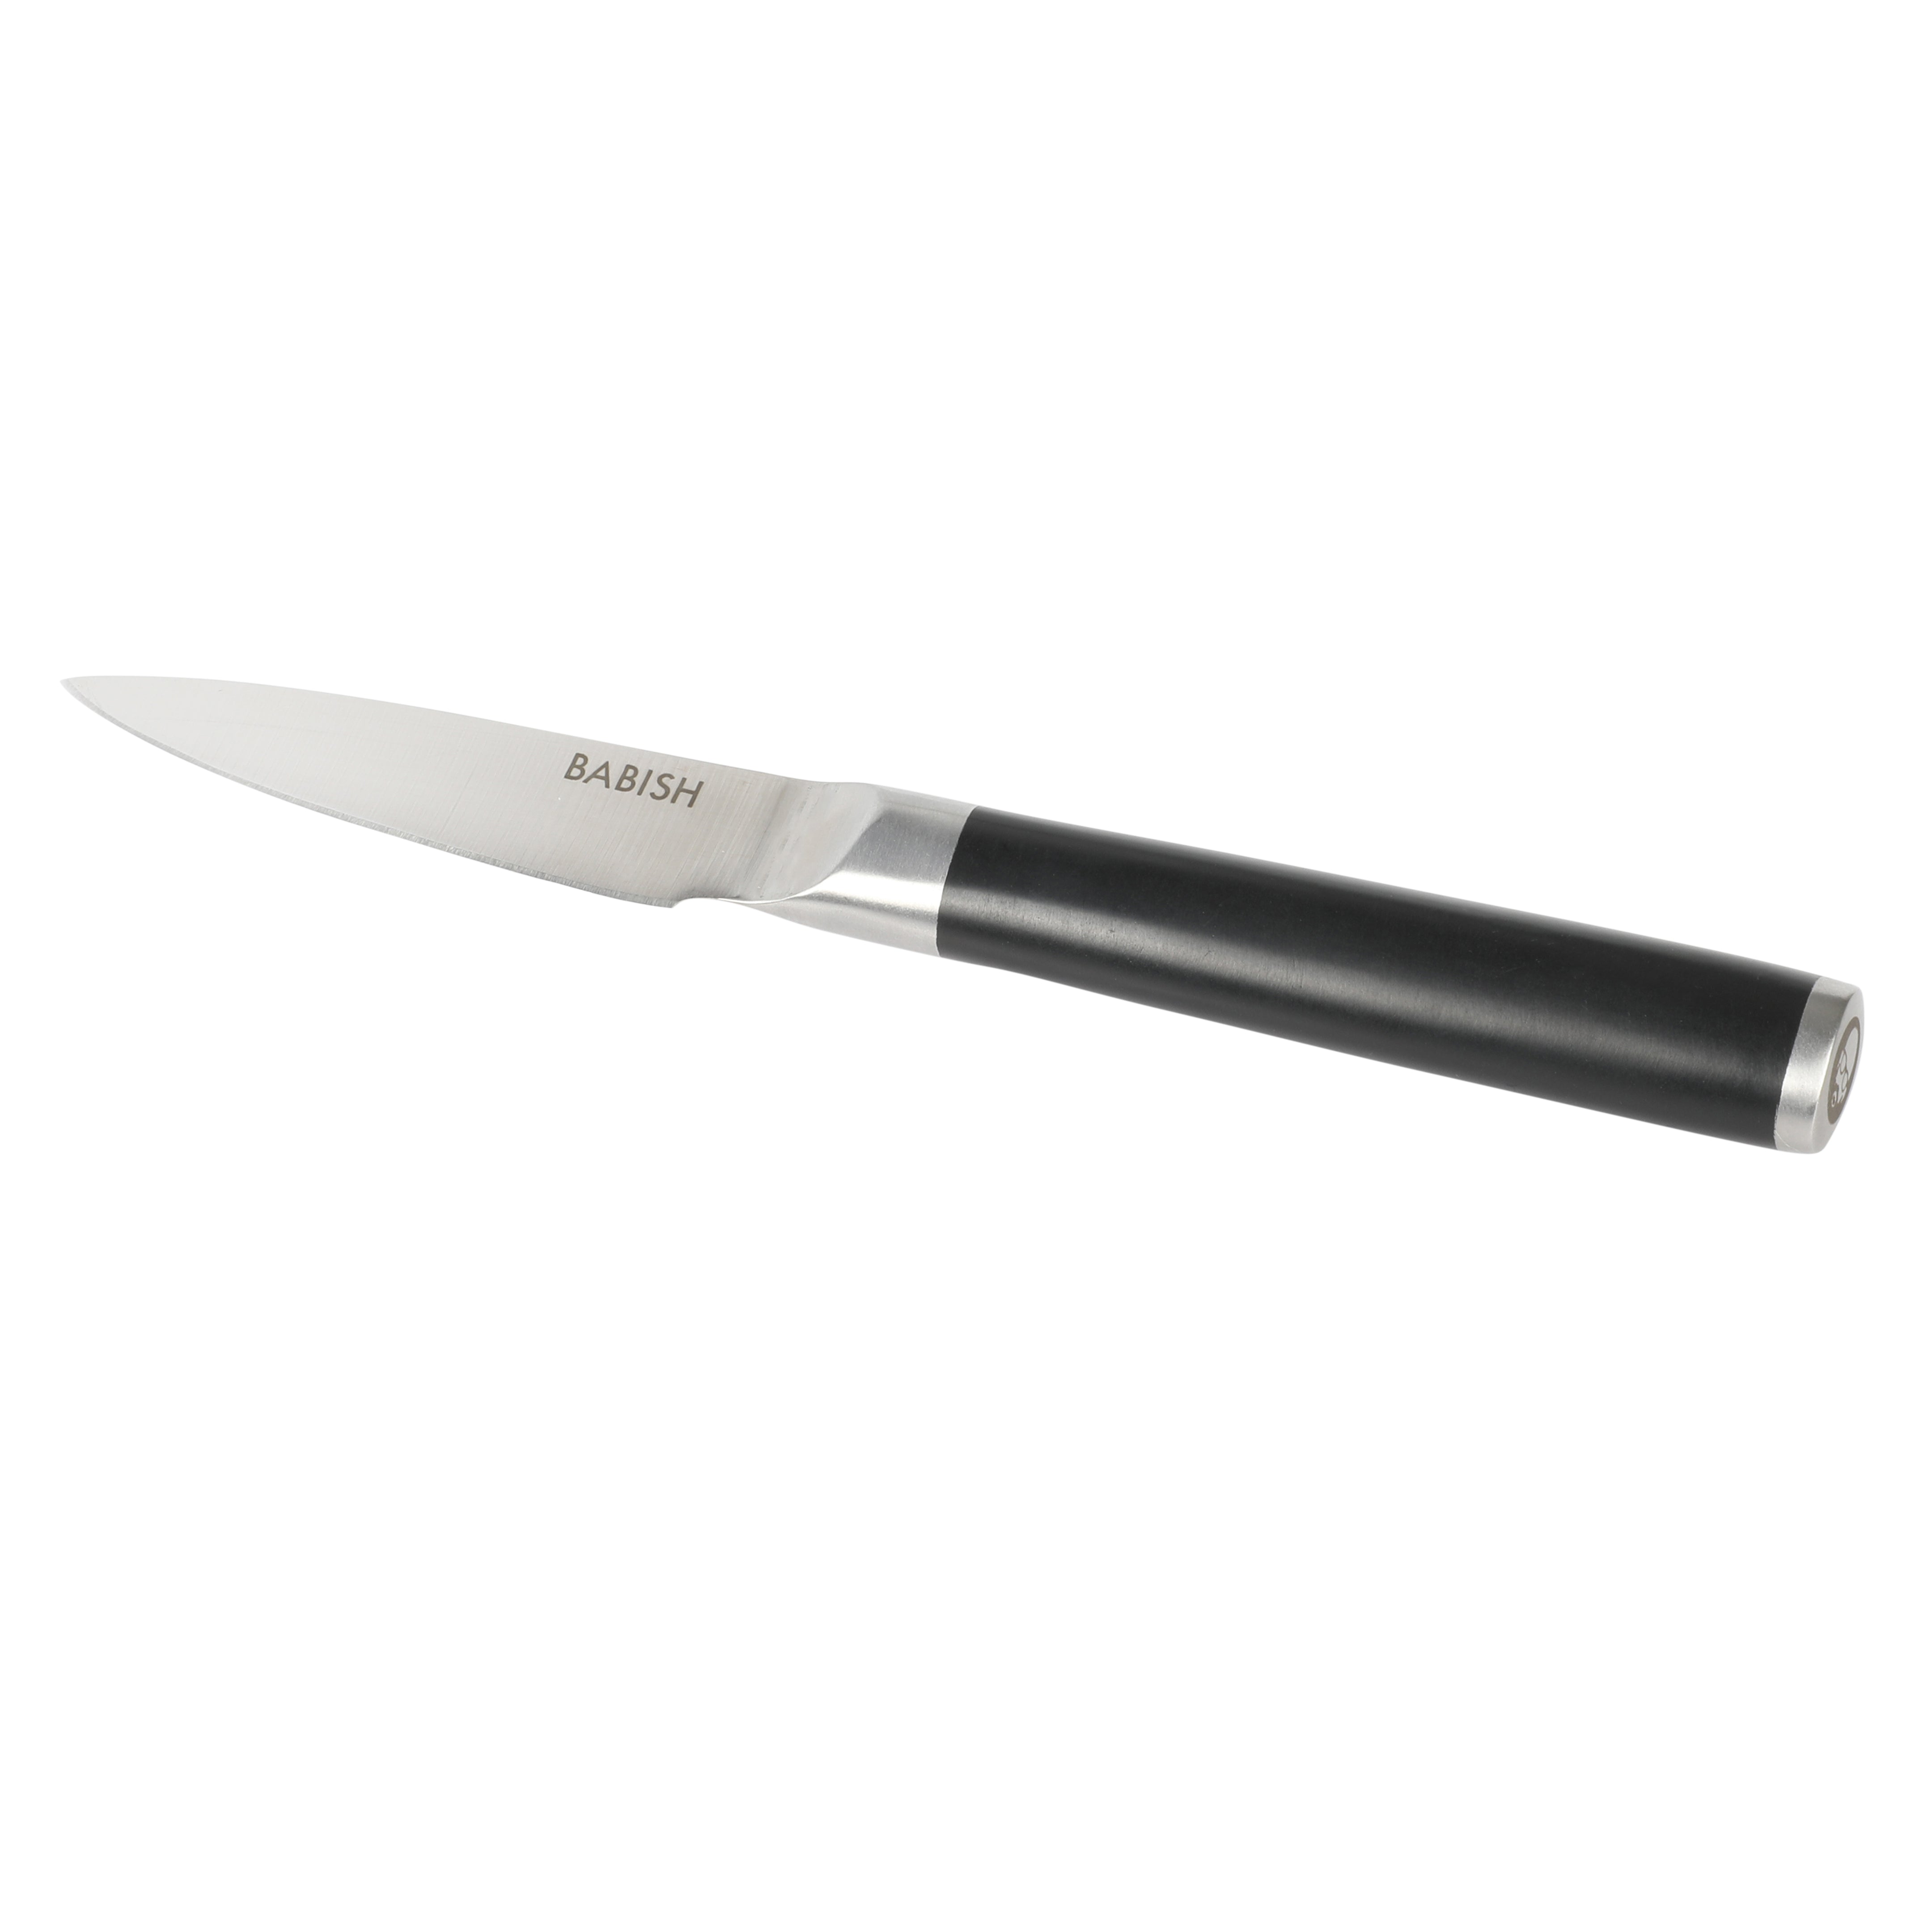 Babish High-Carbon 1.4116 German Steel 3.5" Paring Knife